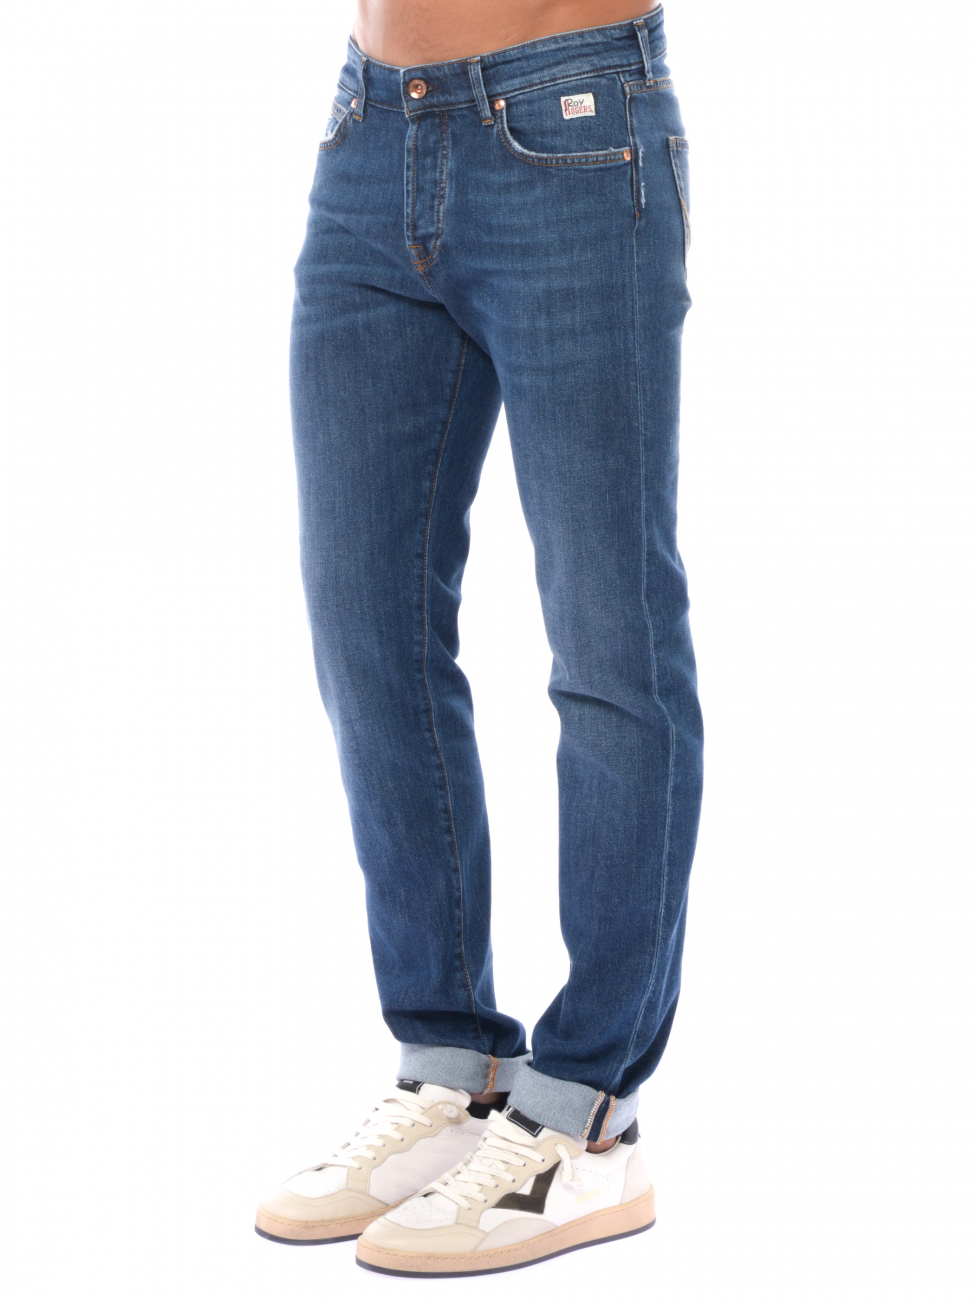 jeans da uomo Roy Roger's cinque tasche con effetto used